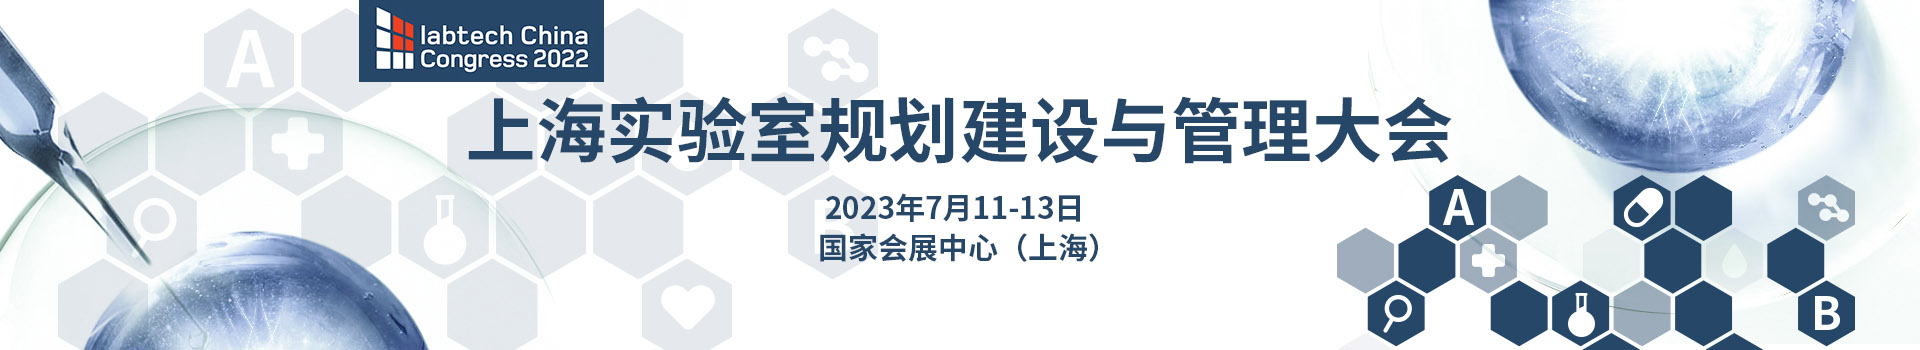 上海实验室规划建设与管理大会 2022